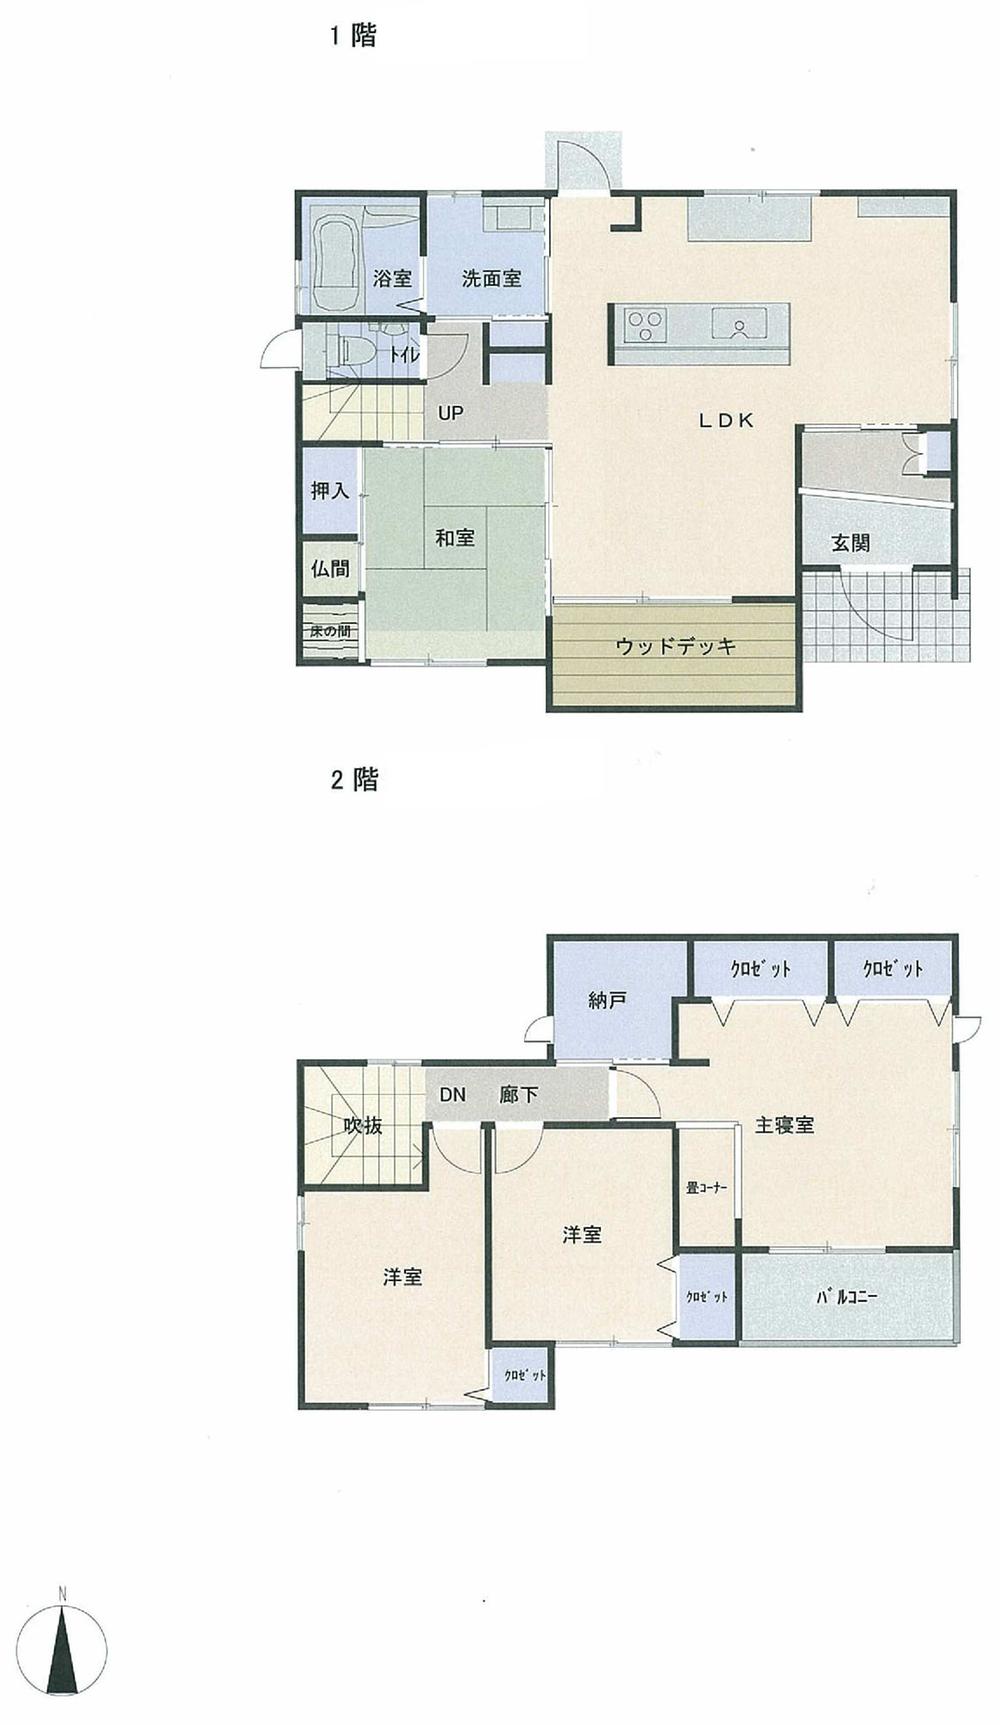 Floor plan. 26 million yen, 4LDK, Land area 203.13 sq m , Building area 107.64 sq m